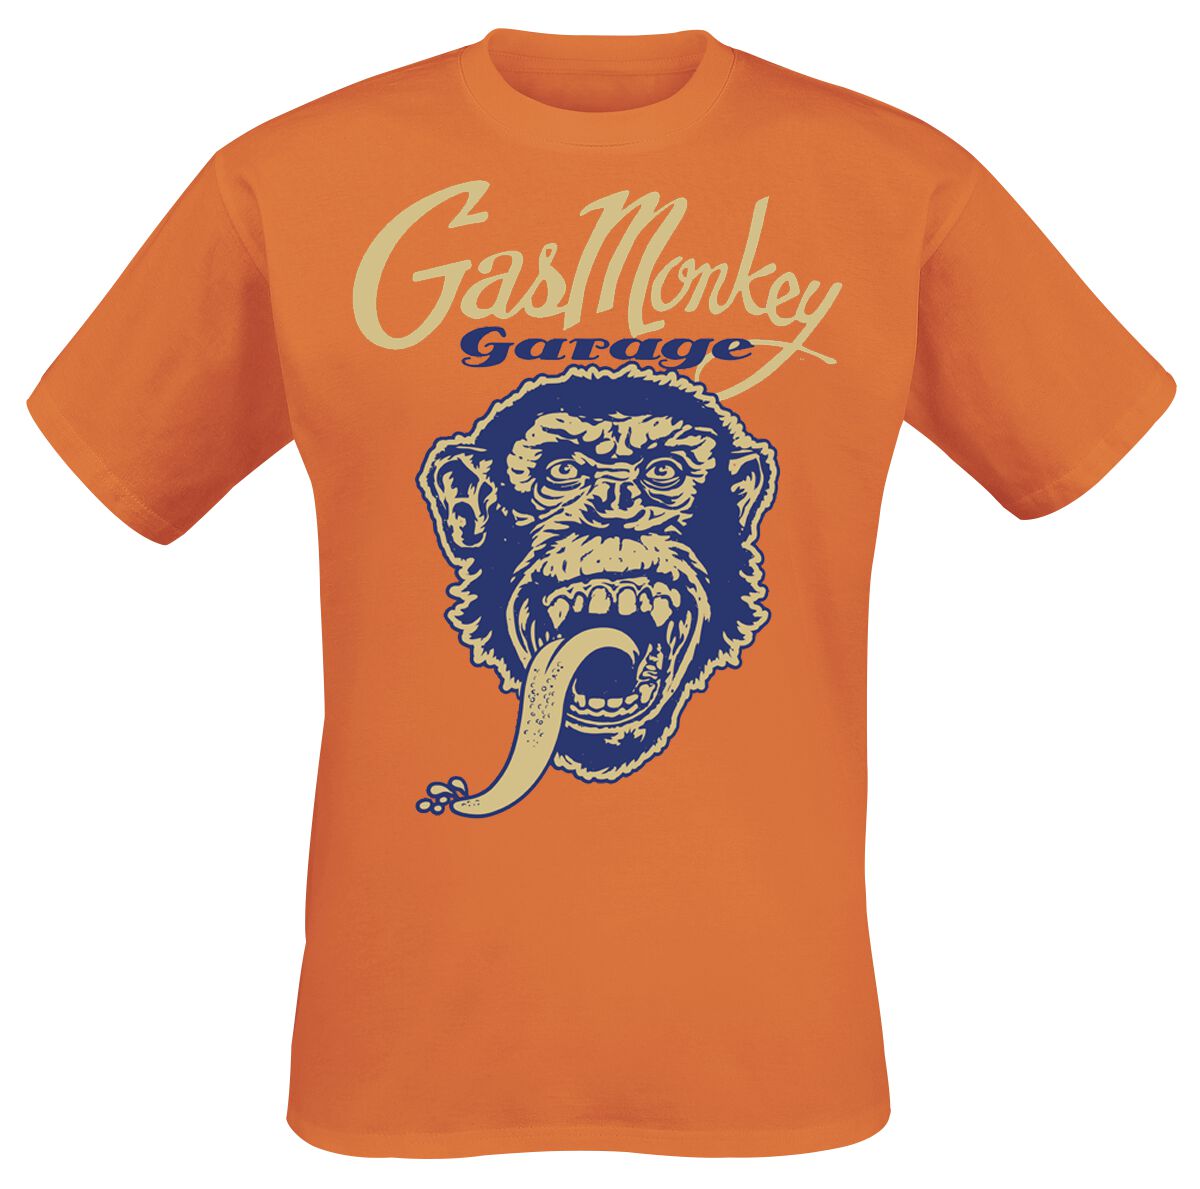 Gas Monkey Garage T-Shirt - Monkey Head - S bis M - für Männer - Größe S - orange  - Lizenzierter Fanartikel